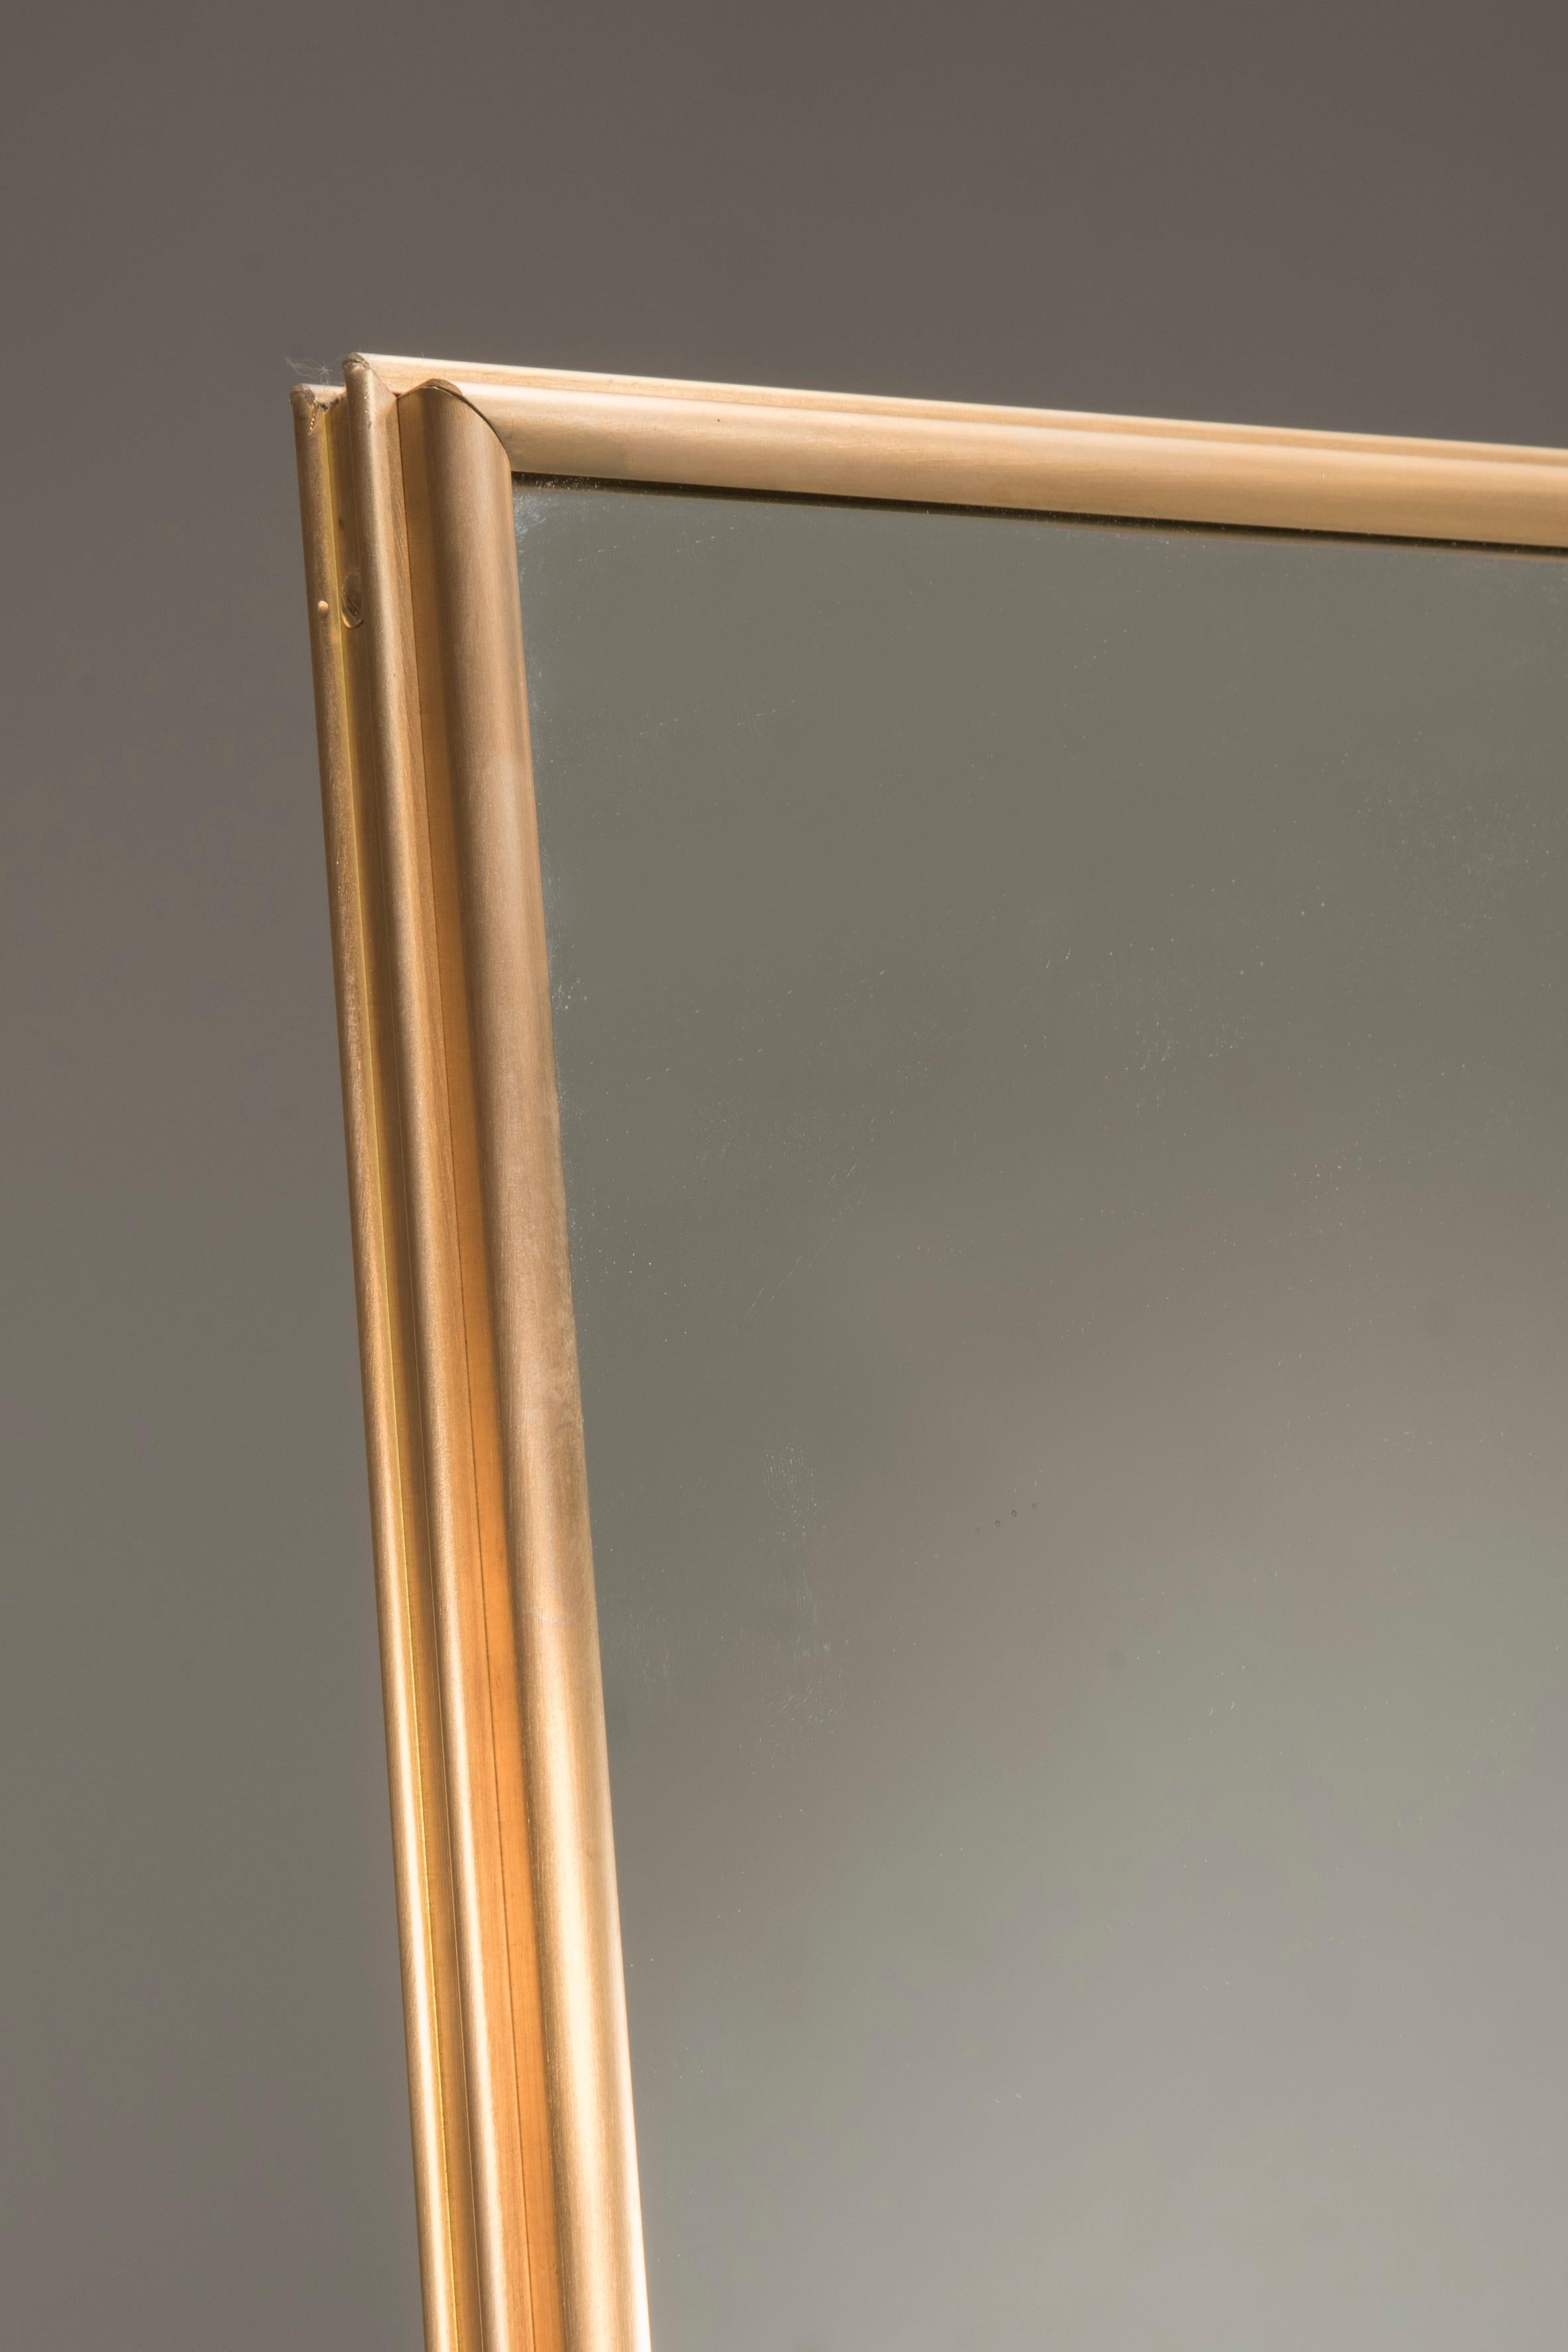 Pescetta présente sa nouvelle collection de miroirs contemporains personnalisables à cadre en laiton. Avec leur cadre en laiton et leur fenêtre à plusieurs panneaux, ces miroirs reproduisent l'idée du style Art déco du début du XXe siècle. Ils